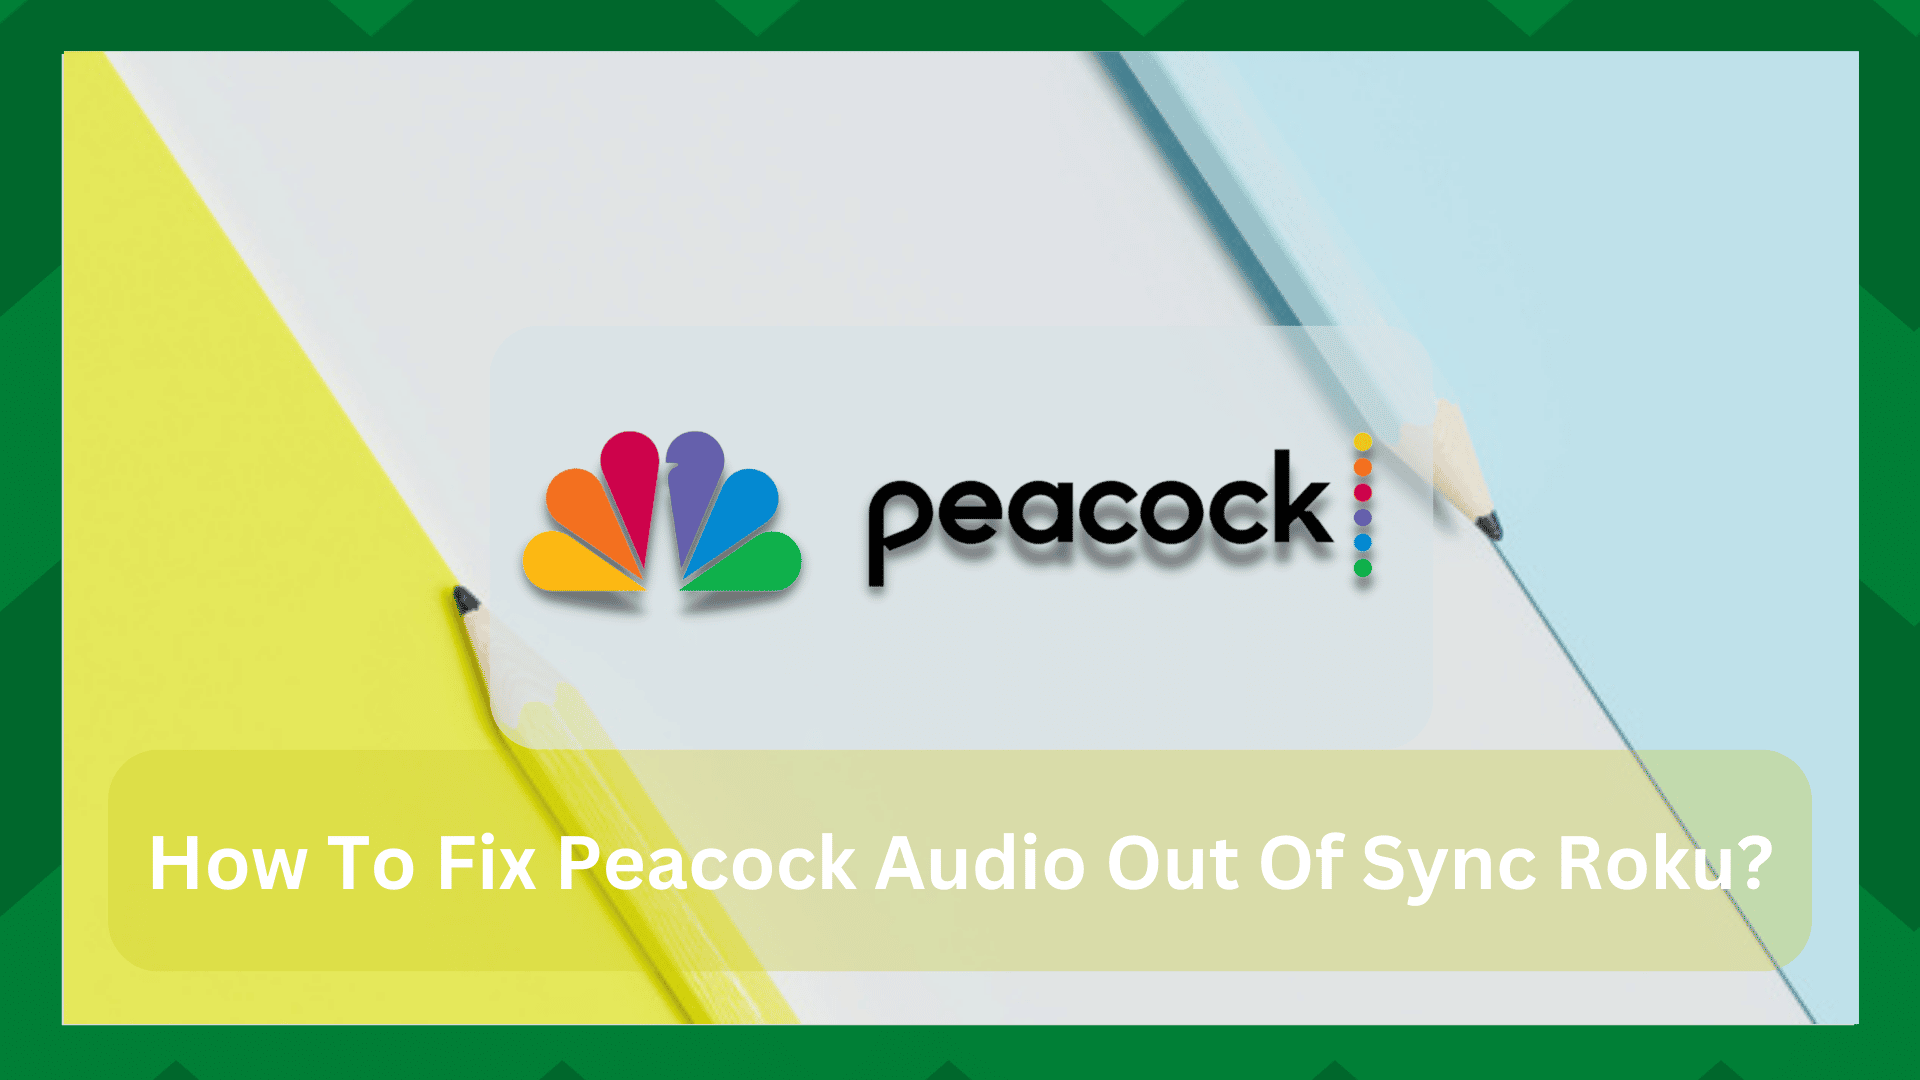 5 արագ լուծում Peacock Audio-ի համար, որը չի համաժամանակացվում Roku-ի համար